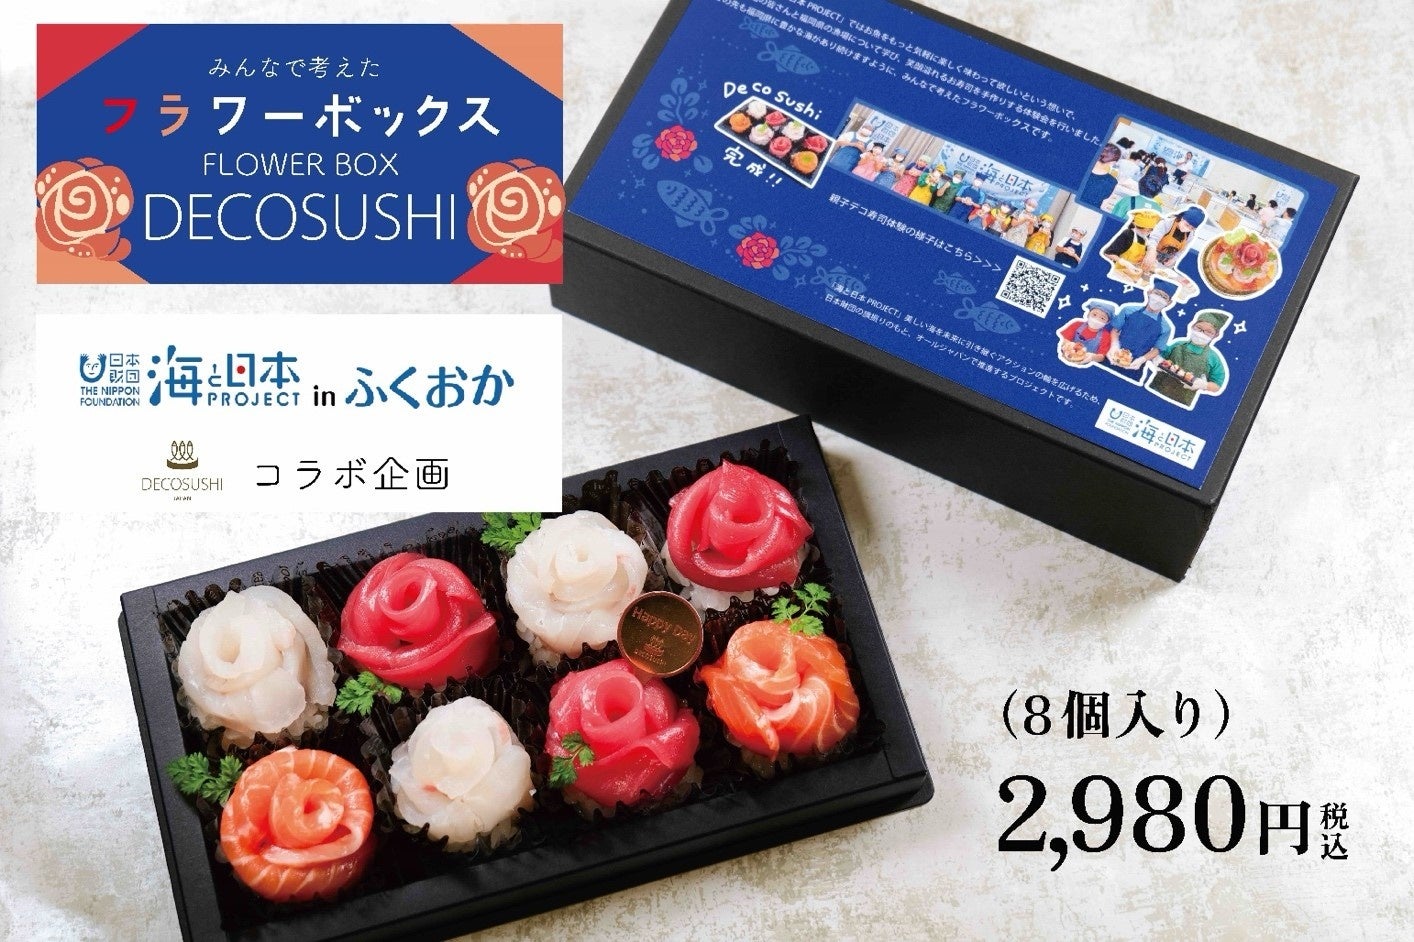 親子デコ寿司教室で子どもたちが考案した 海と日本PROJECT「フラワーボックスデコ寿司」を発売！